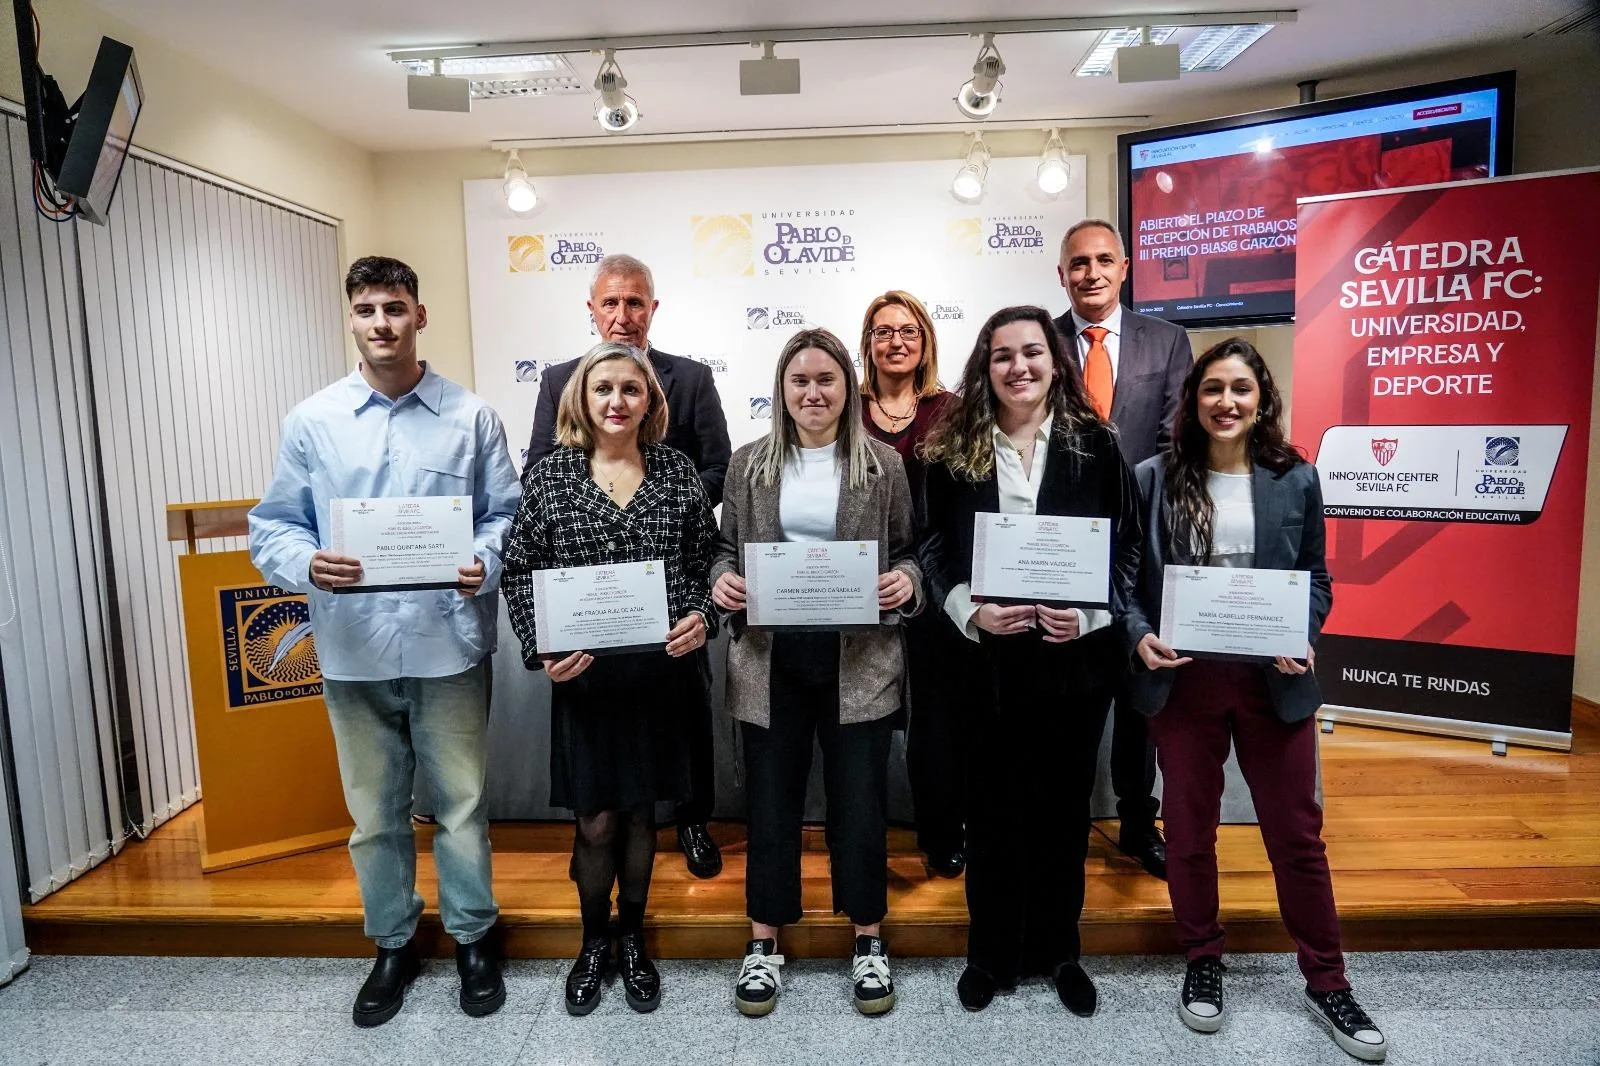 The III Blasco Garzón Awards were presented at Pablo de Olavide University